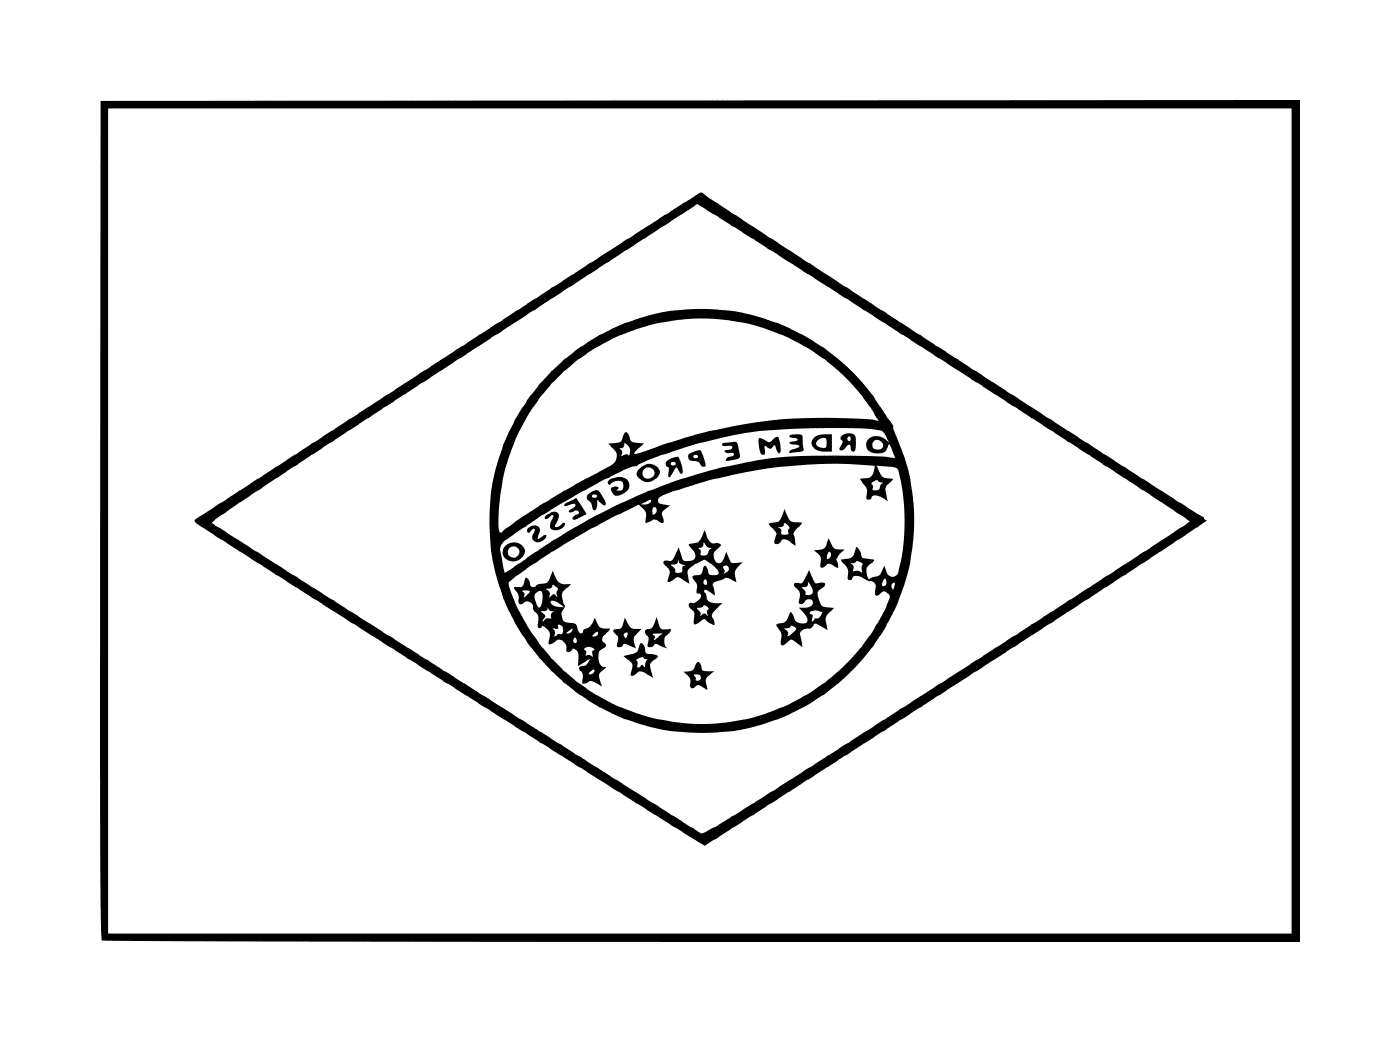  Flagge von Brasilien 